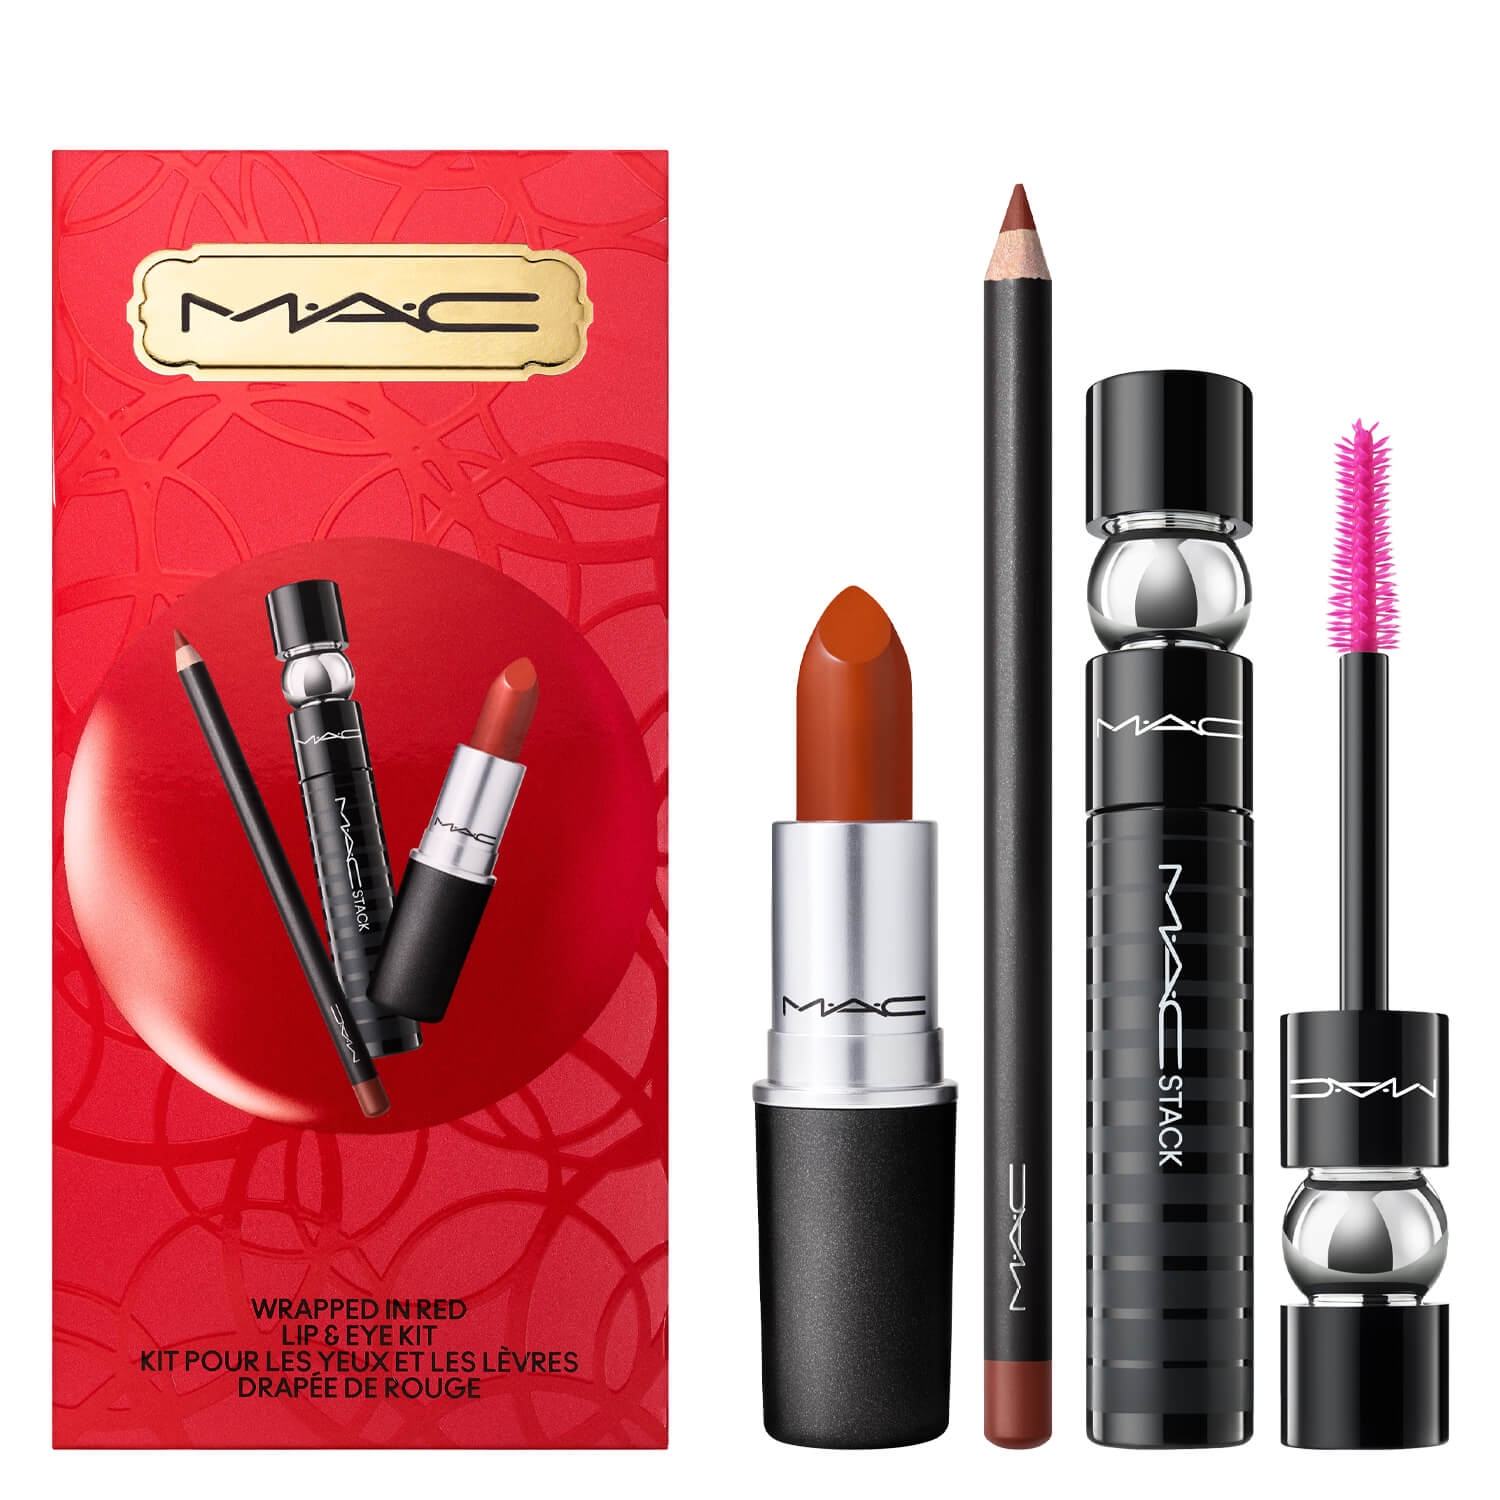 Produktbild von M·A·C Specials - Wrapped In Red Lip & Eye Kit